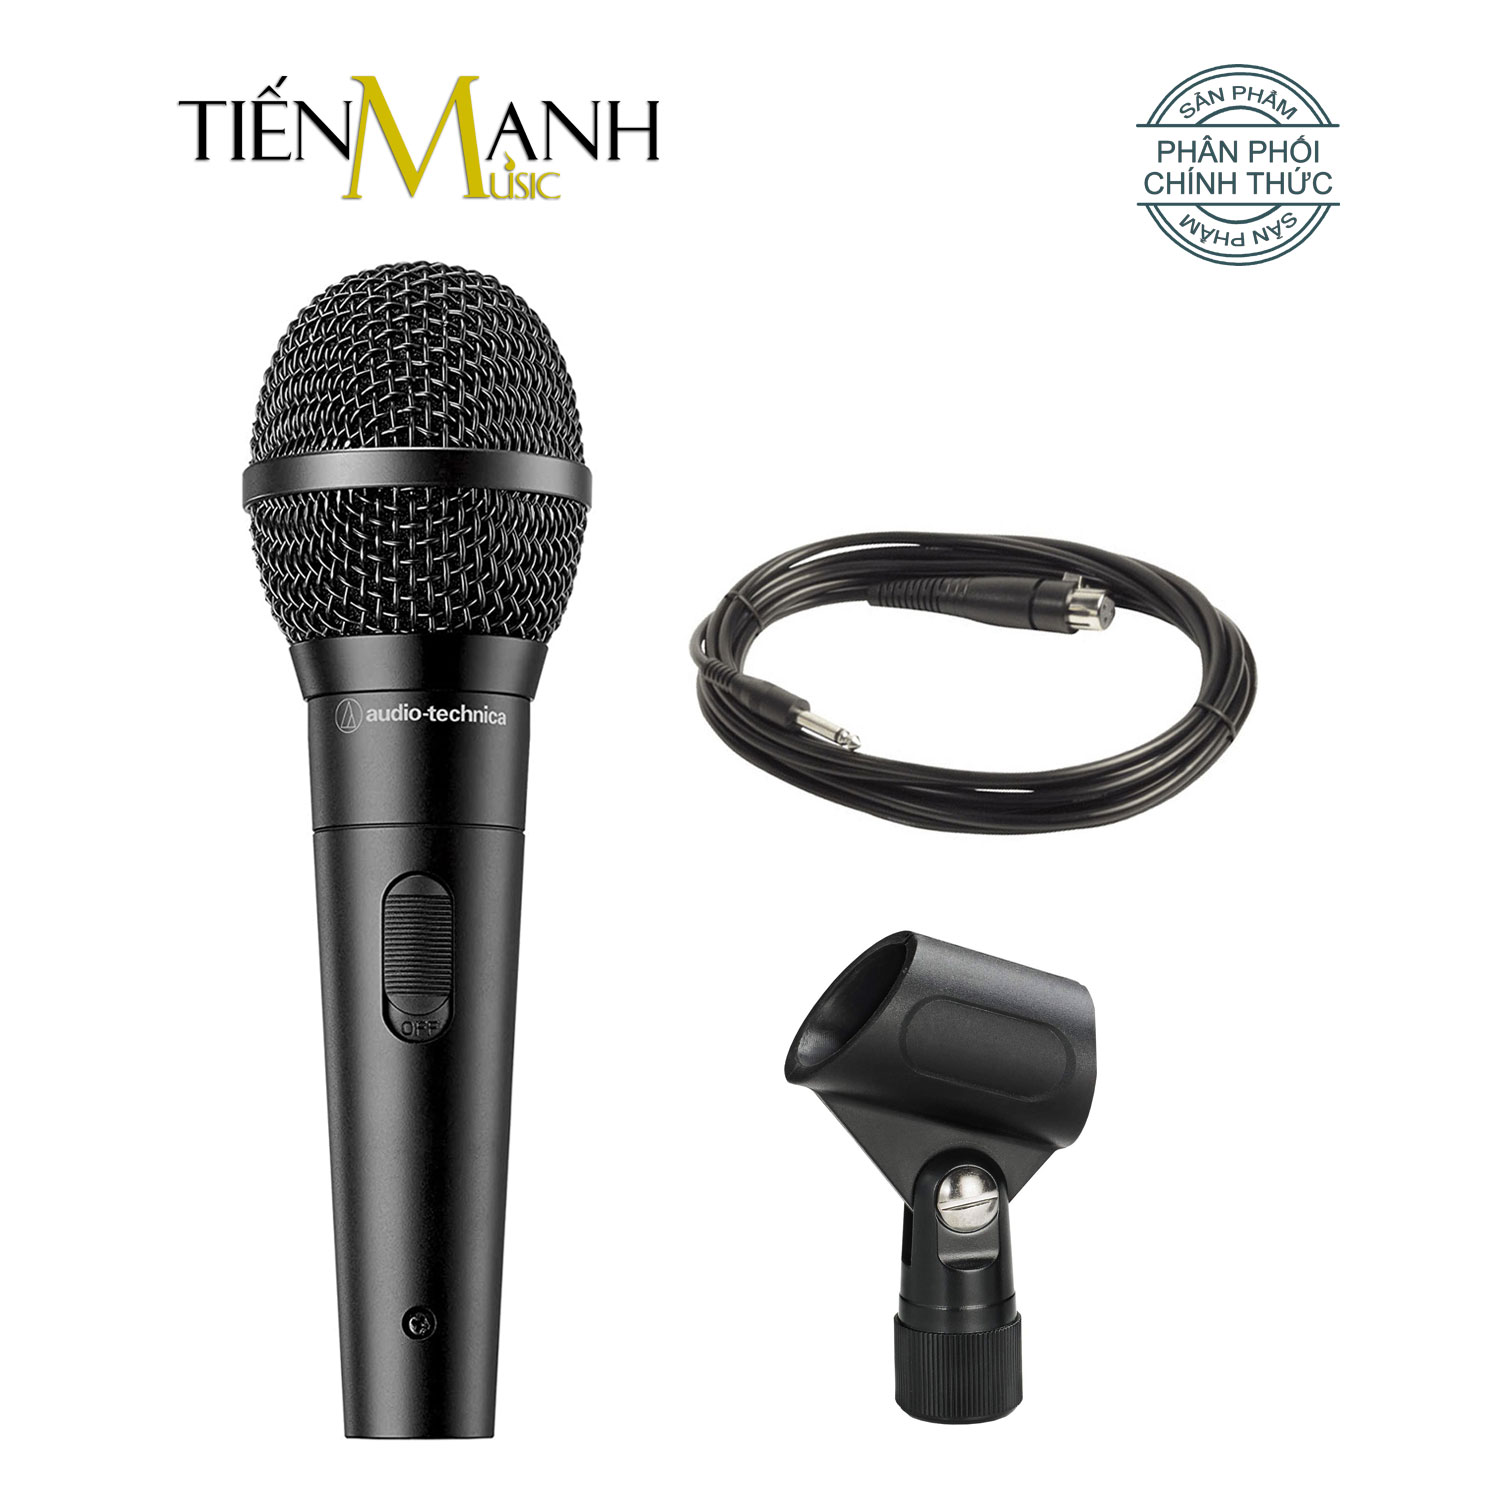 [Chính Hãng Japan] Mic Hát Karaoke Audio Technica ATR1300X - Có Dây 5m Thu Âm Vocal Micro Dynamic Biểu Diễn chuyên nghiệp Microphone